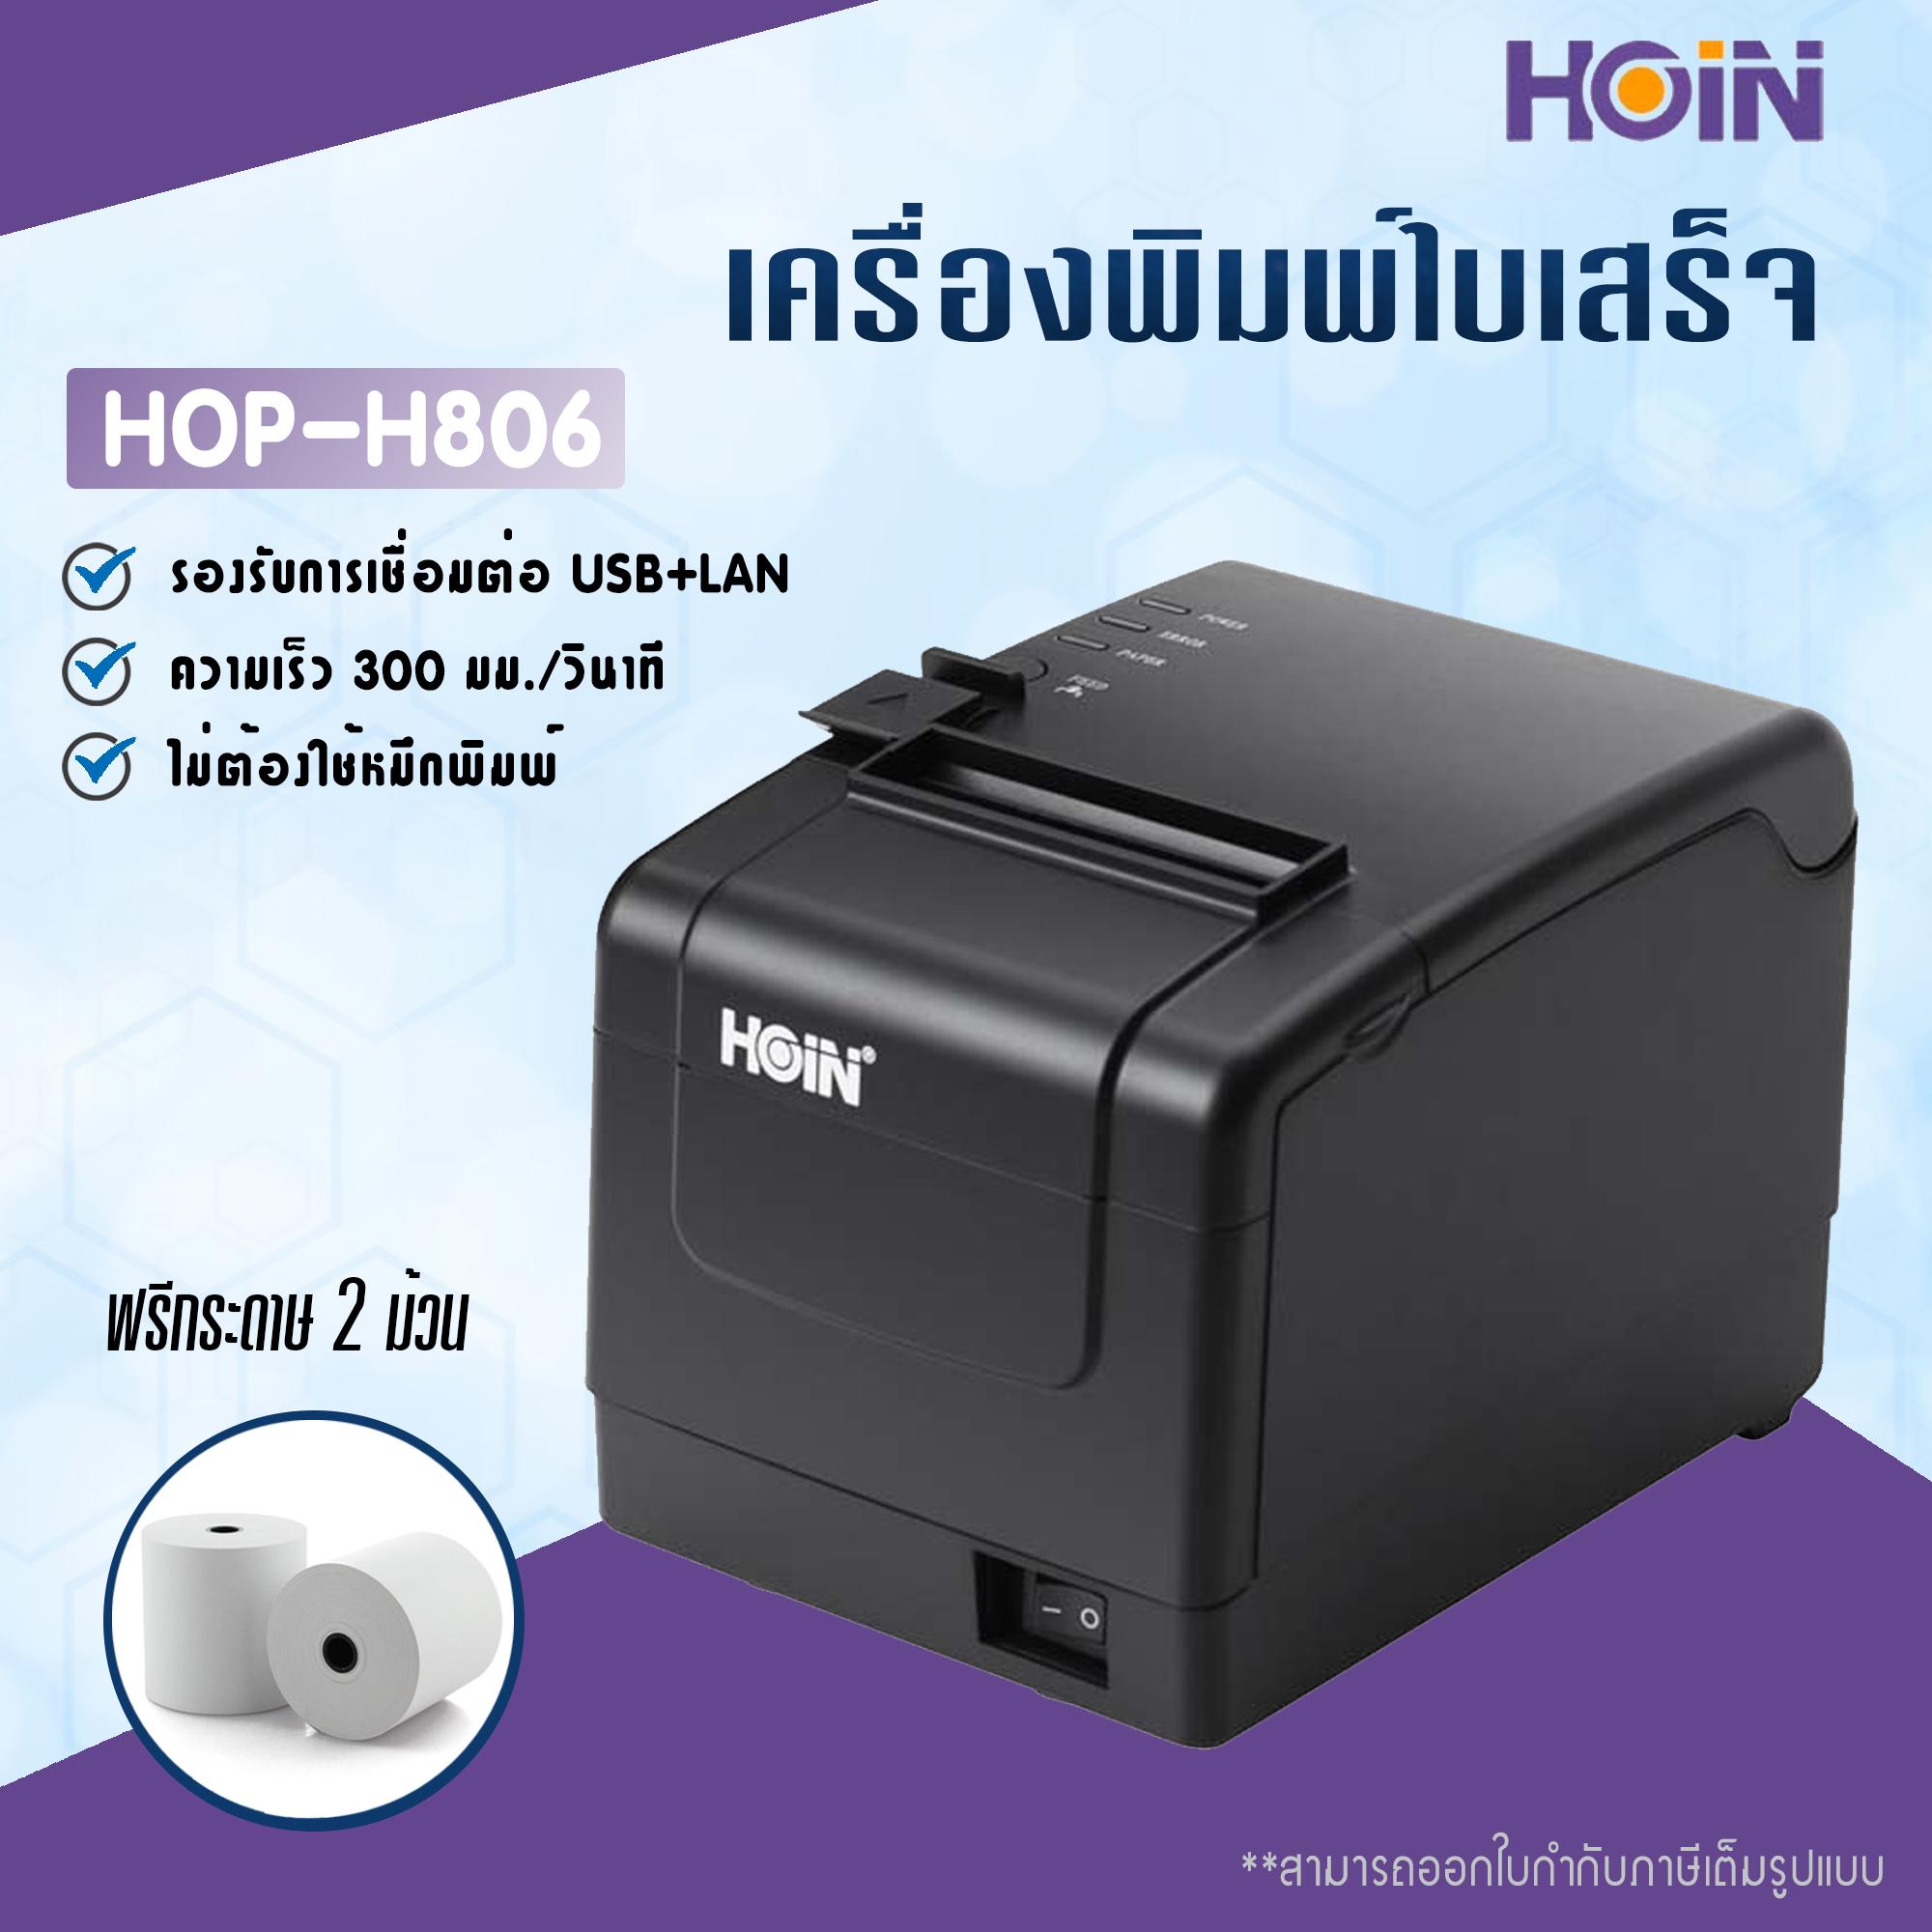 (อัพเกรดความเร็ว 300 มม.) เครื่องพิมพ์ใบเสร็จ Hoin รุ่น HOP-H806 รองรับขนาด 80 มม.เชื่อมต่อผ่าน LAN (Receipt Printer Thermal 80 mm.LAN connect)